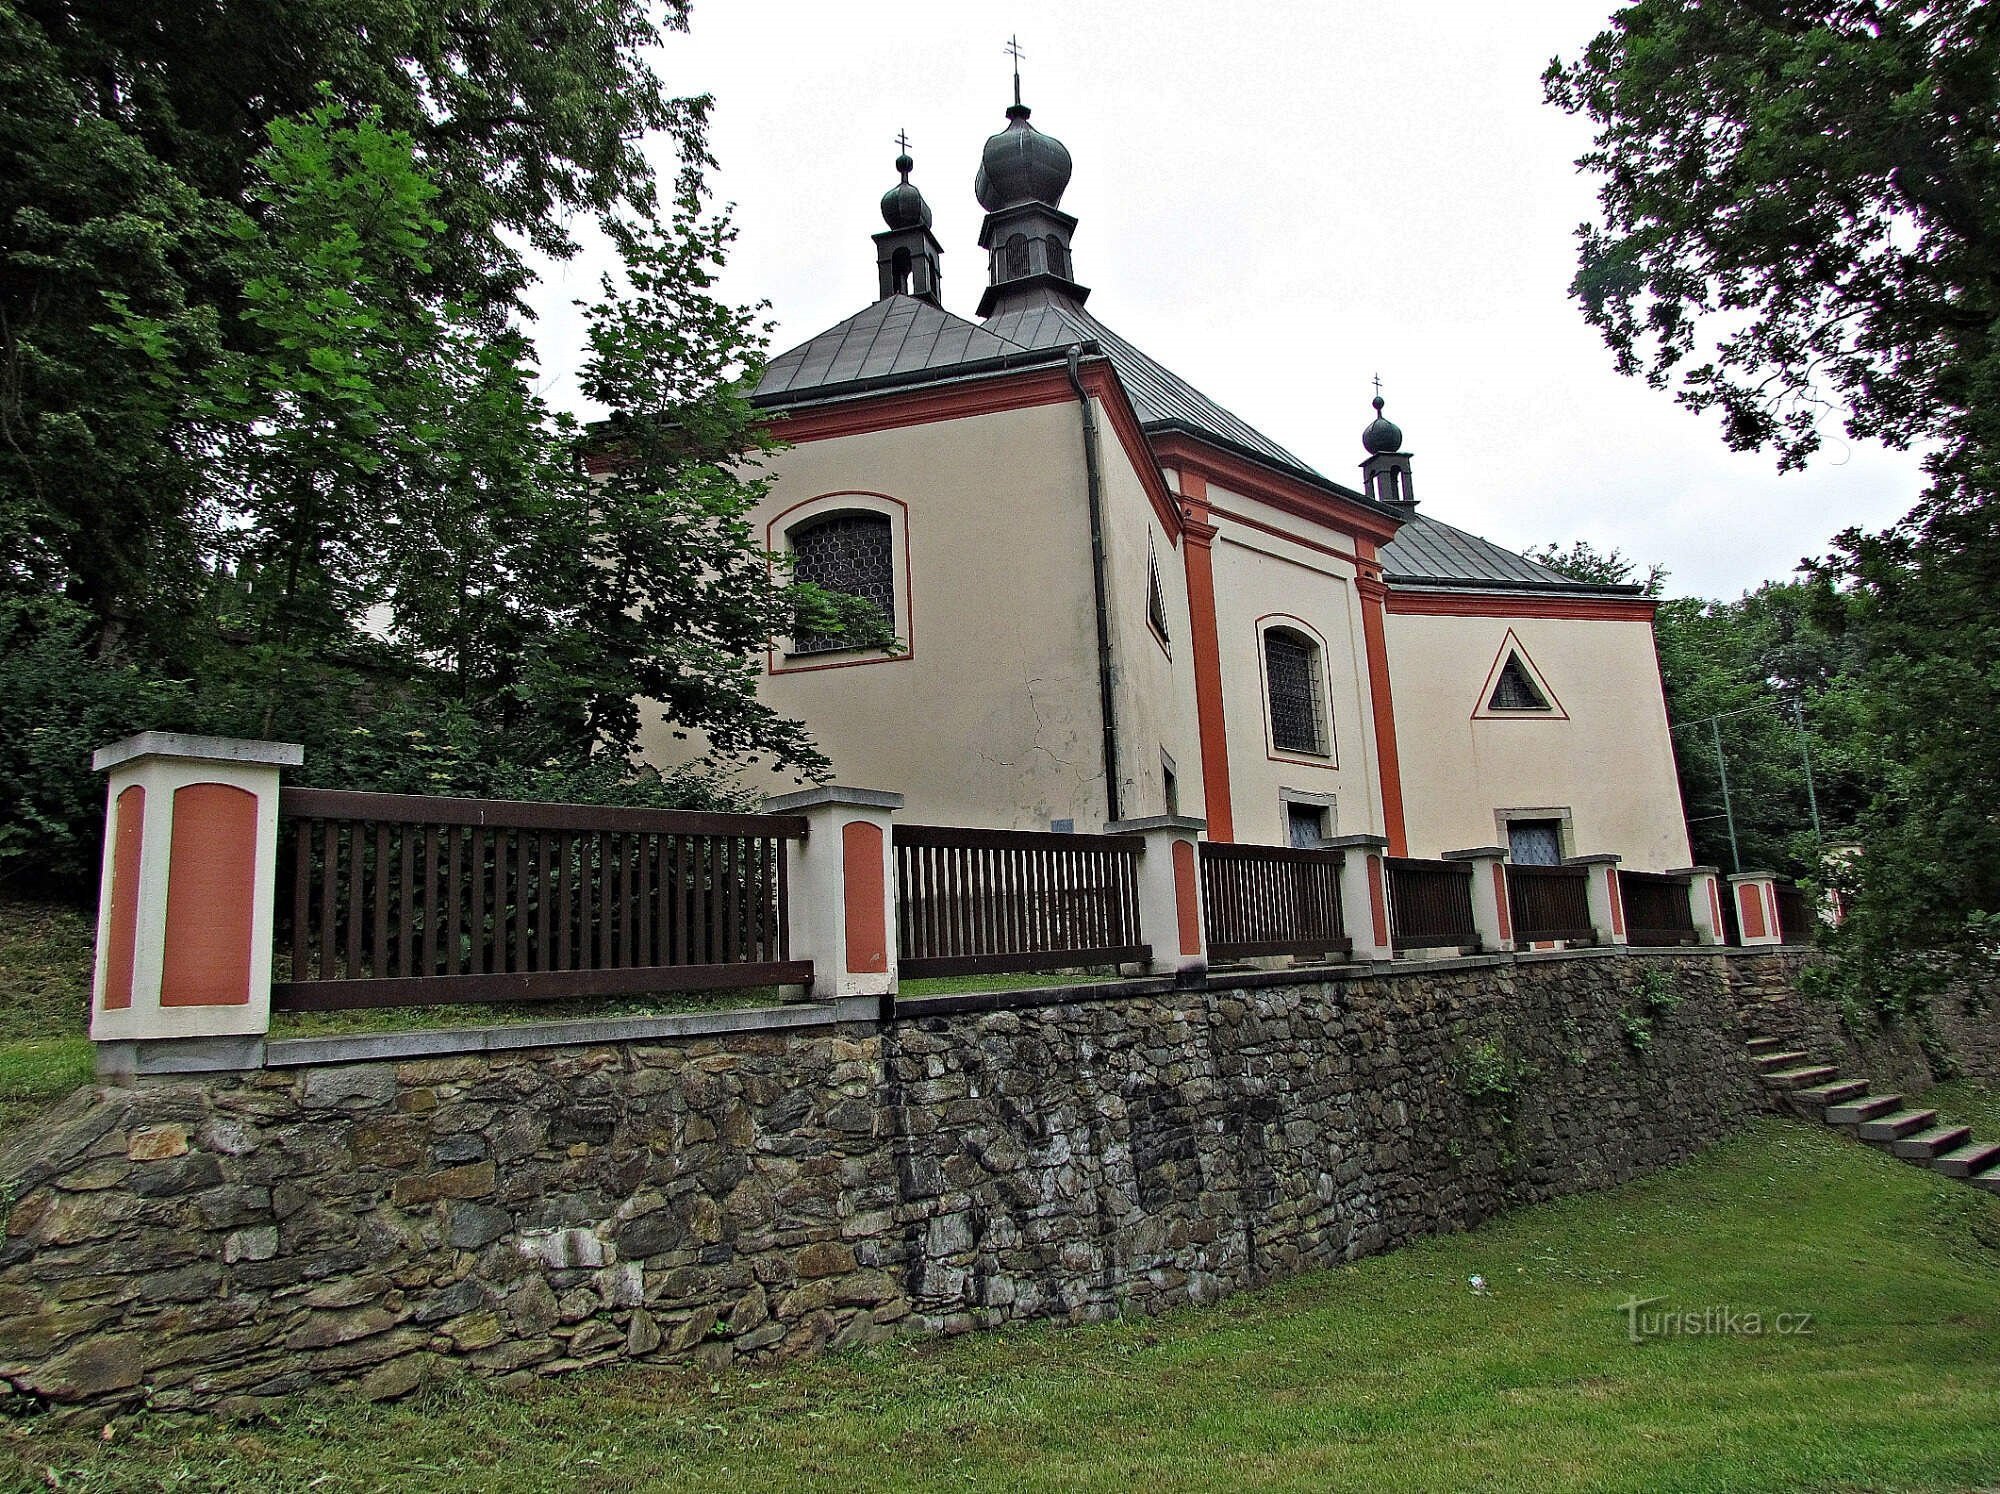 Havlíčkobrodin Pyhän Kolminaisuuden katedraali